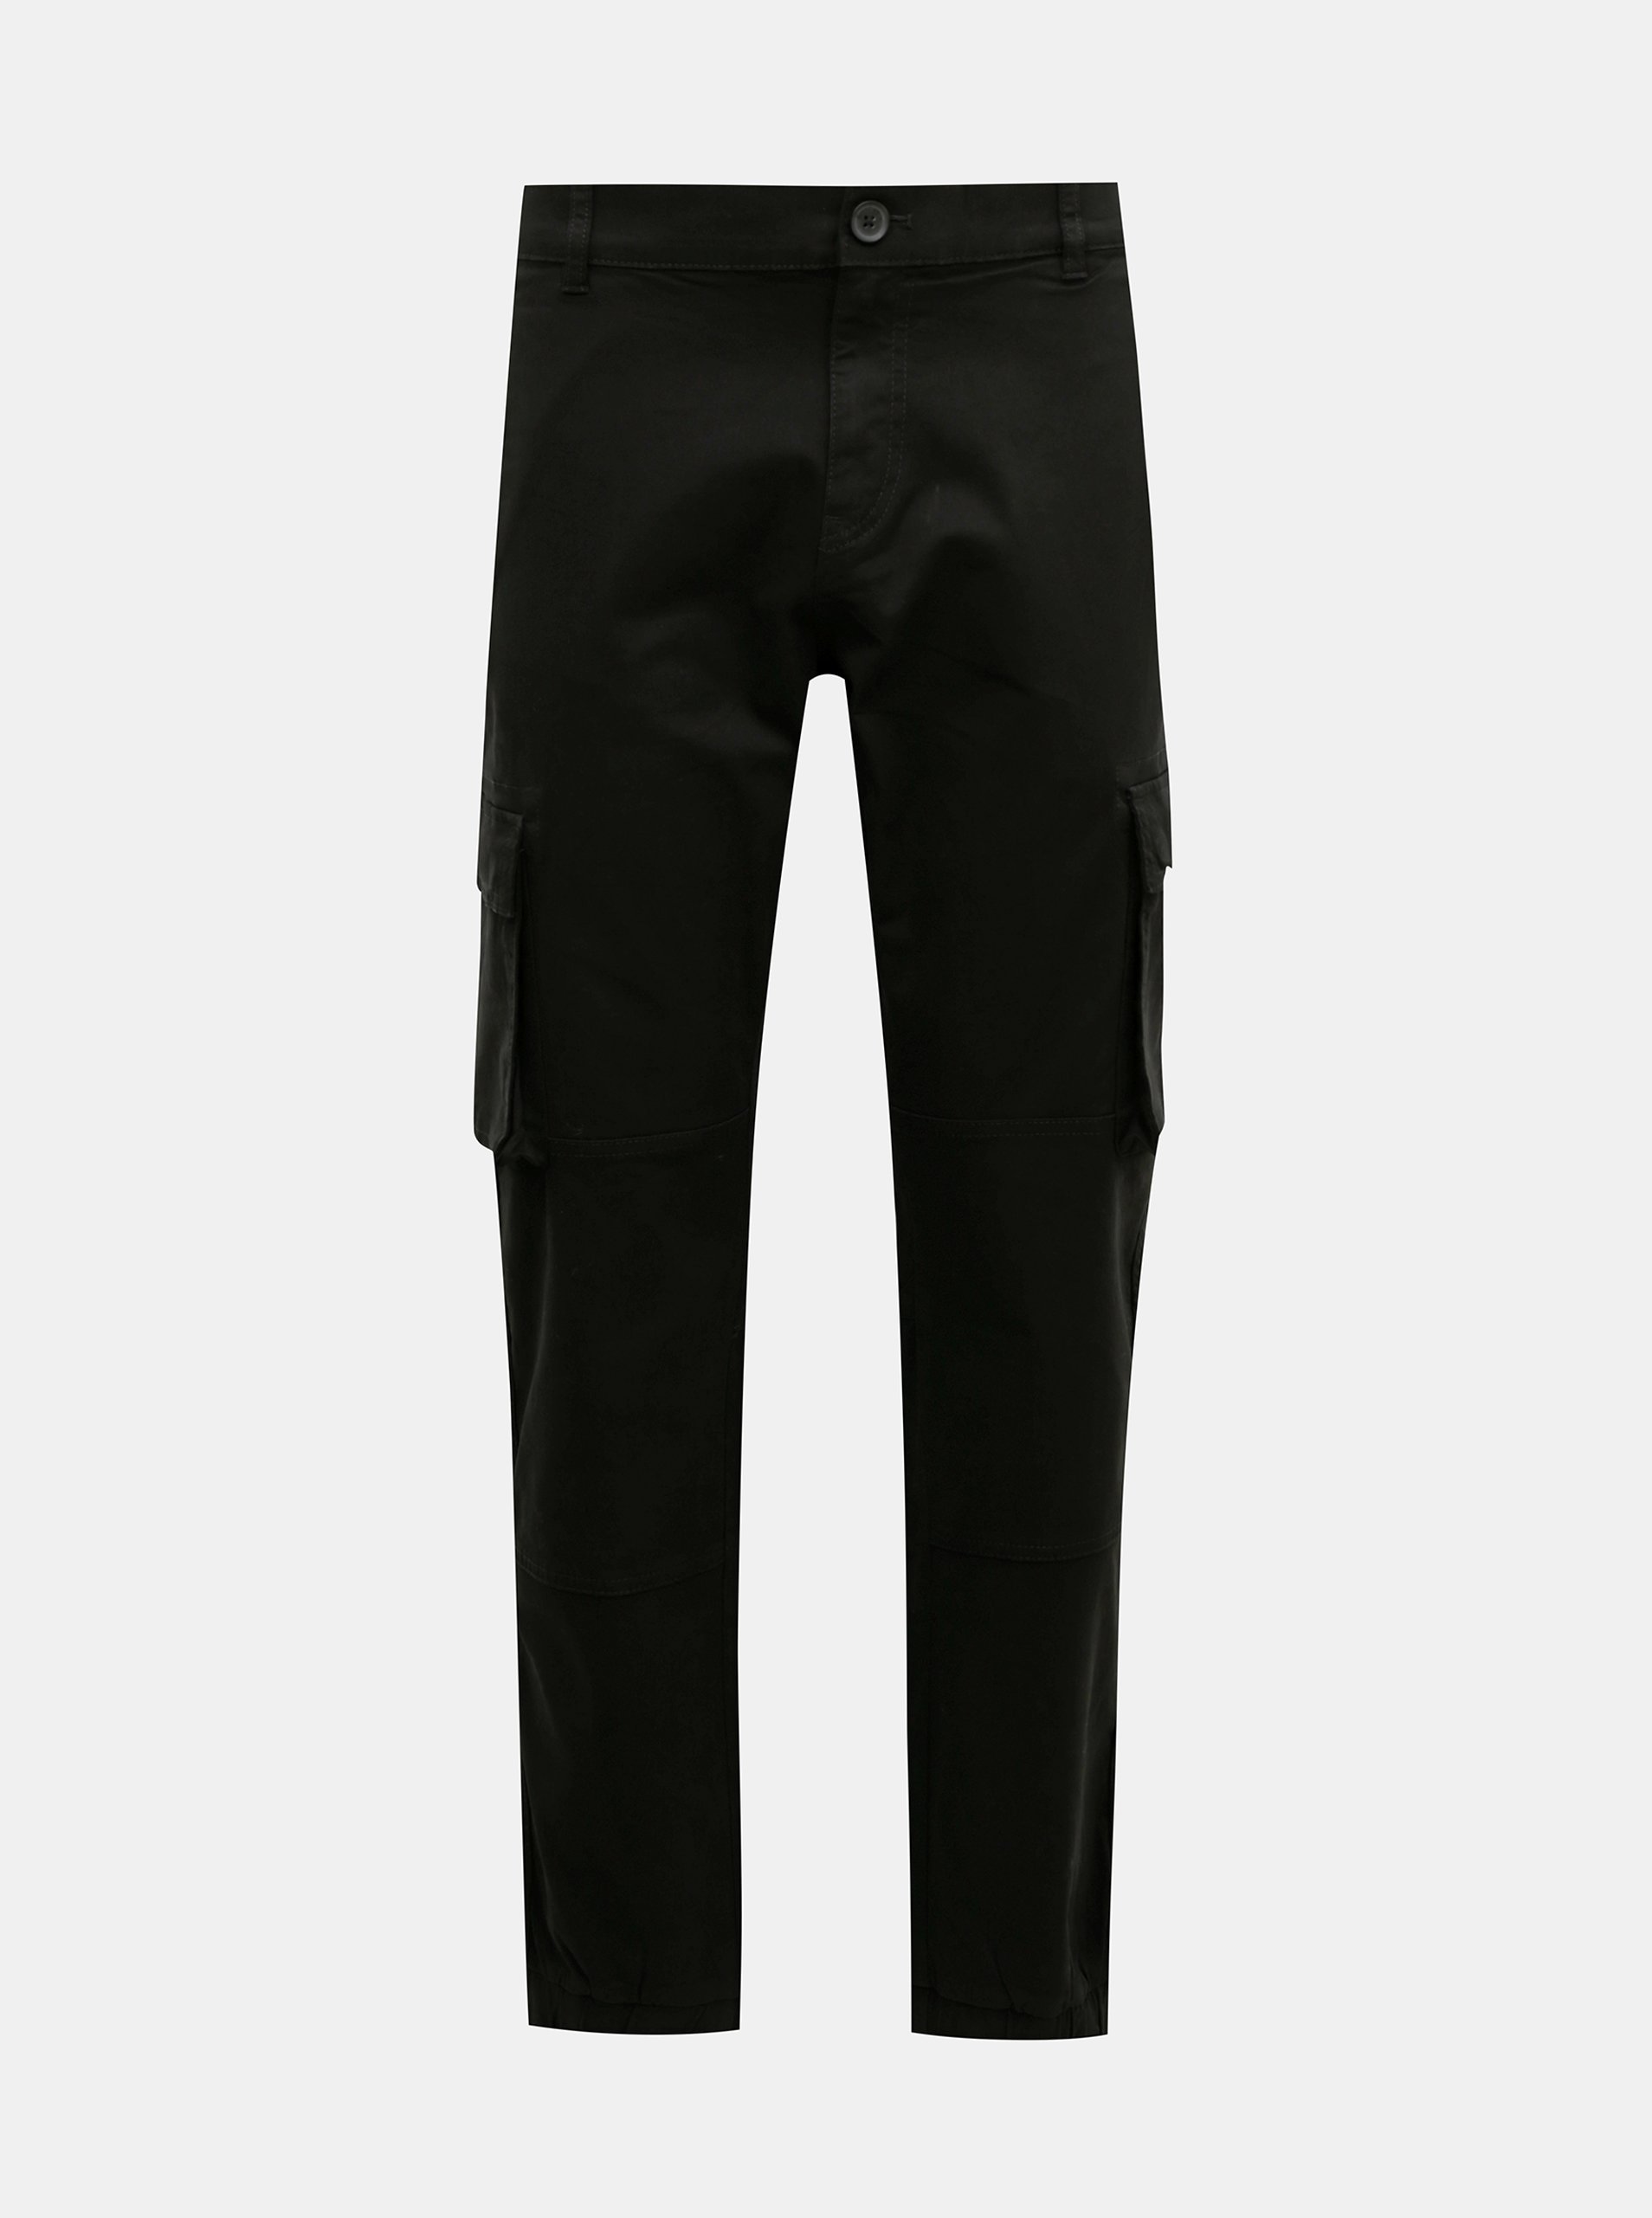 E-shop Černé kalhoty s kapsami ONLY & SONS Cam